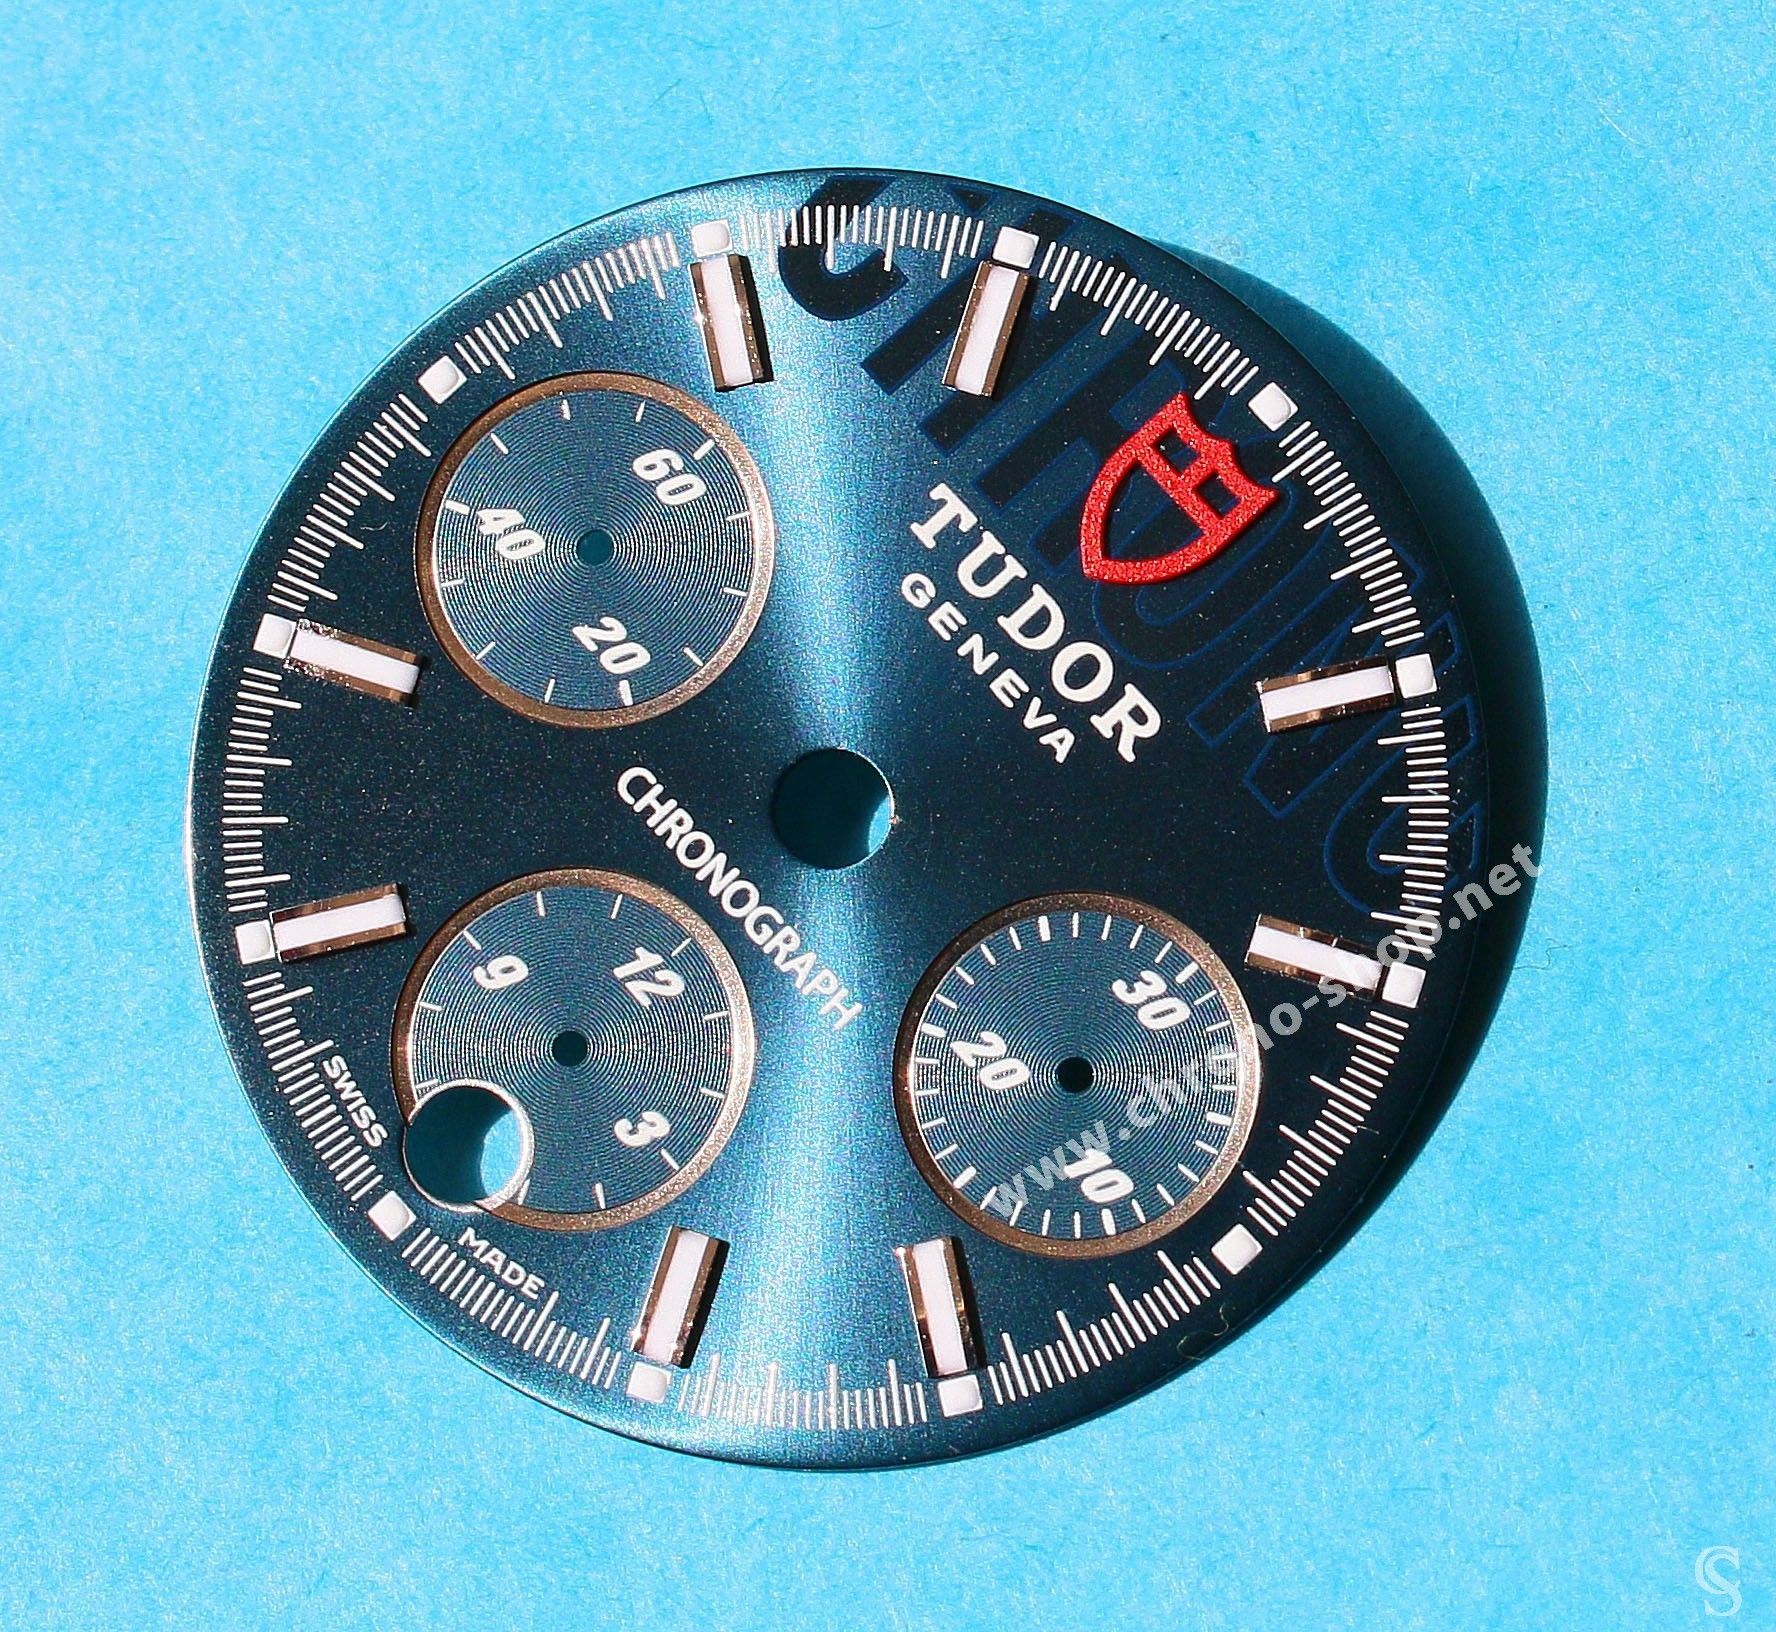 Tudor Sport Chronograph horology Genuine & Rare Watch Metal Blue dial part ref 20300-2